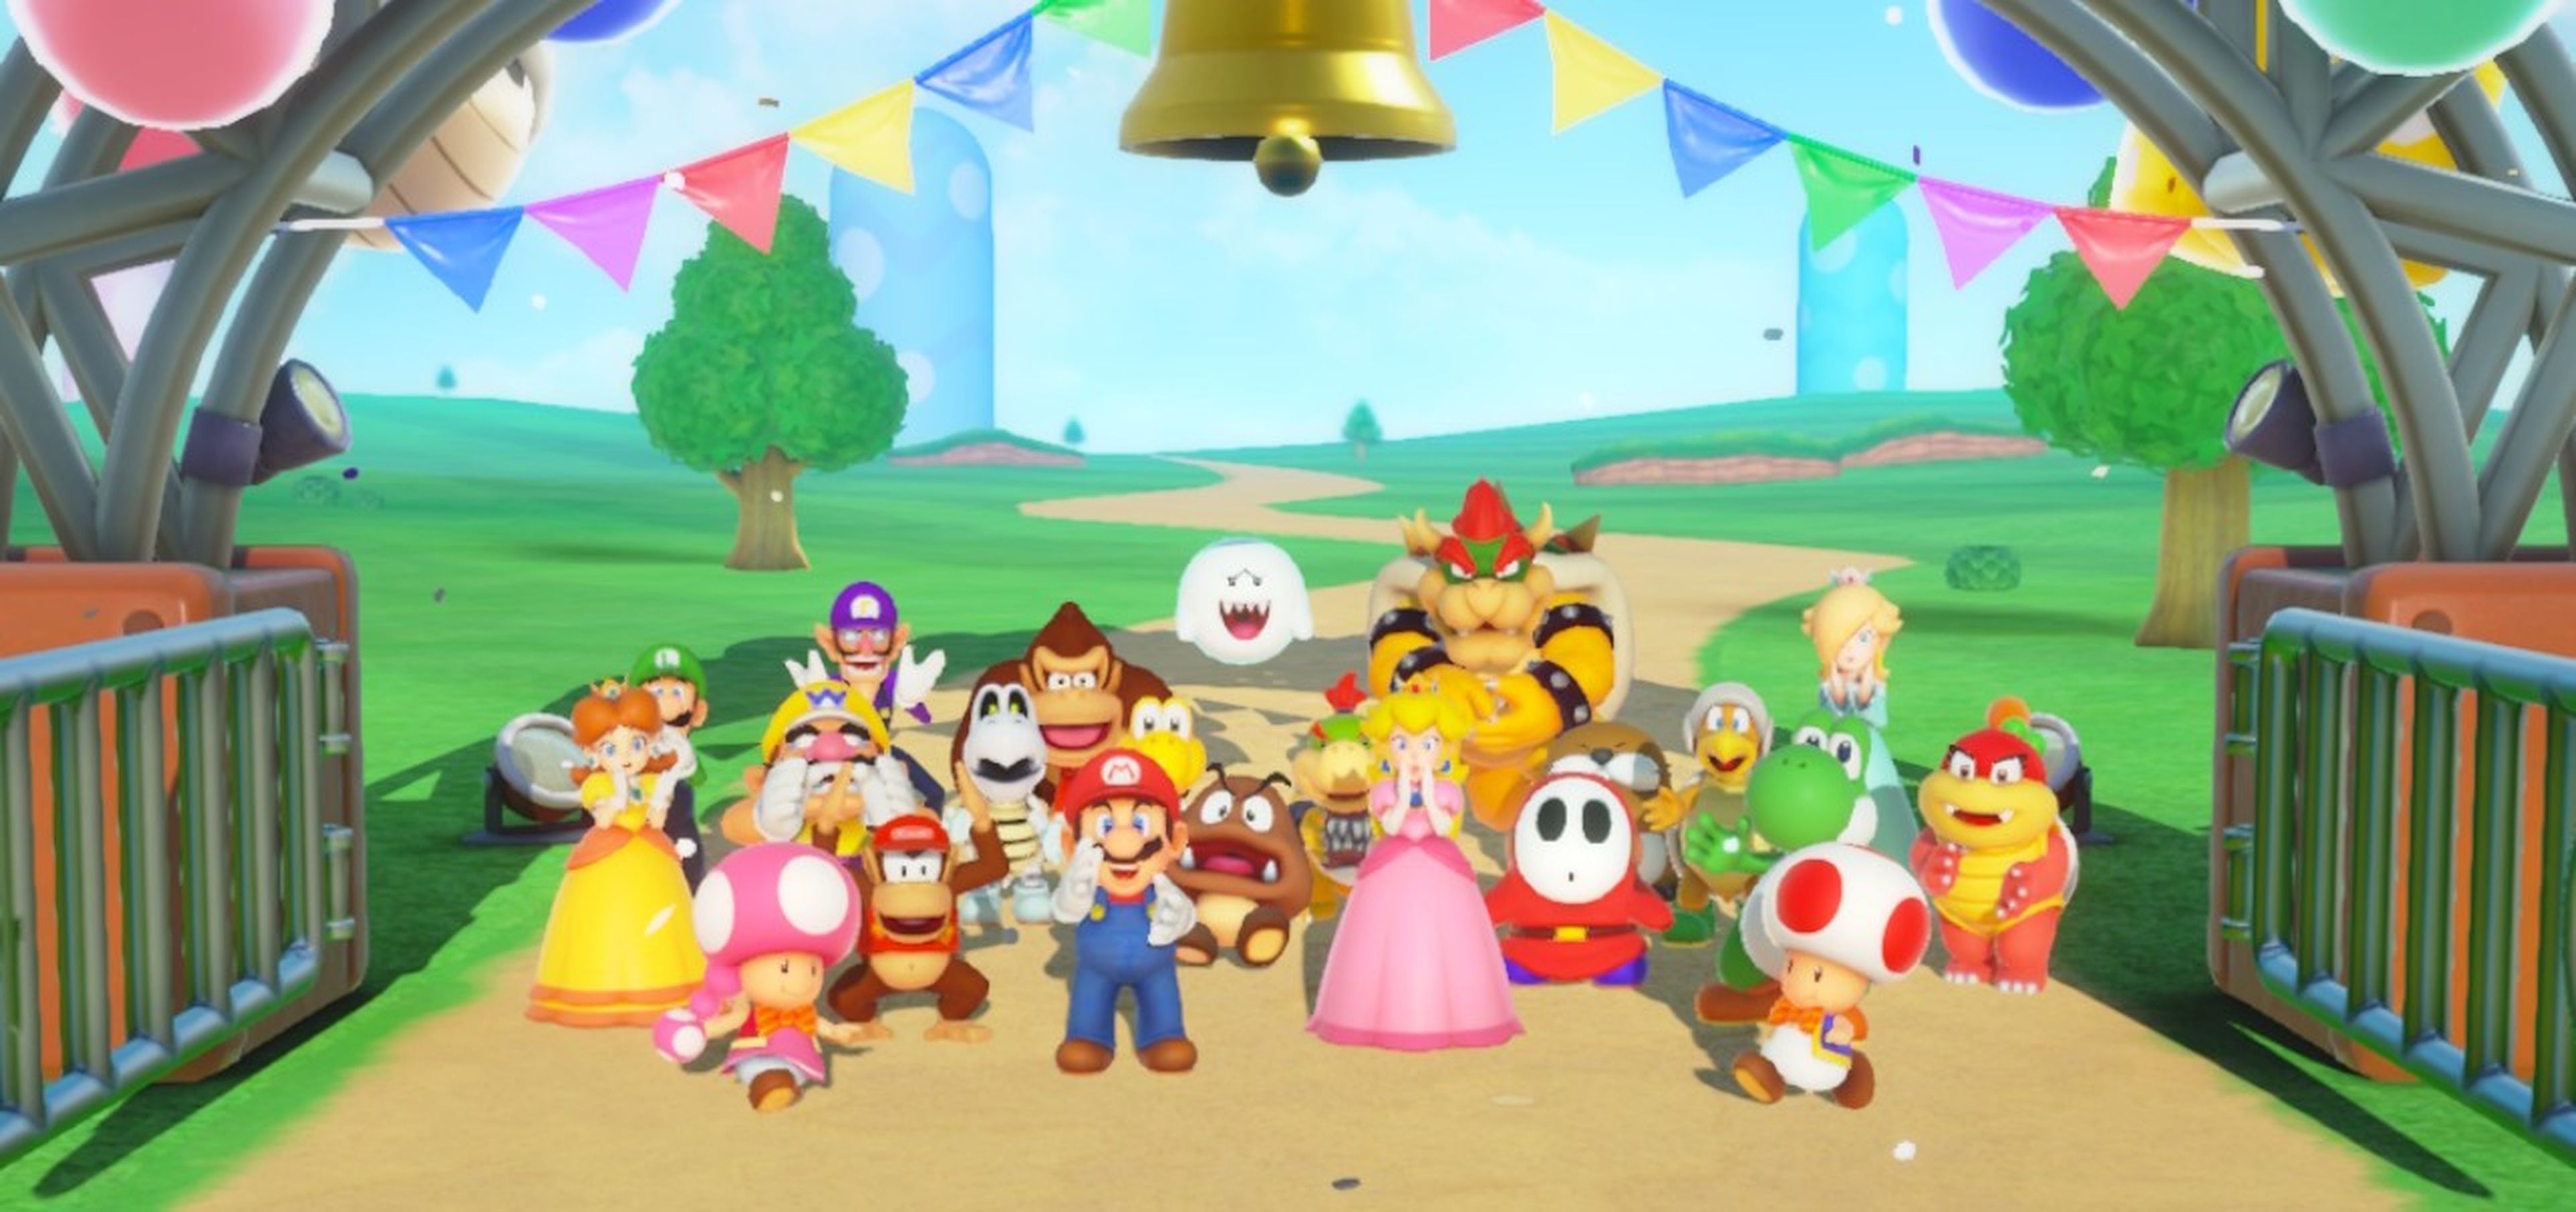 Análisis de Super Mario Party